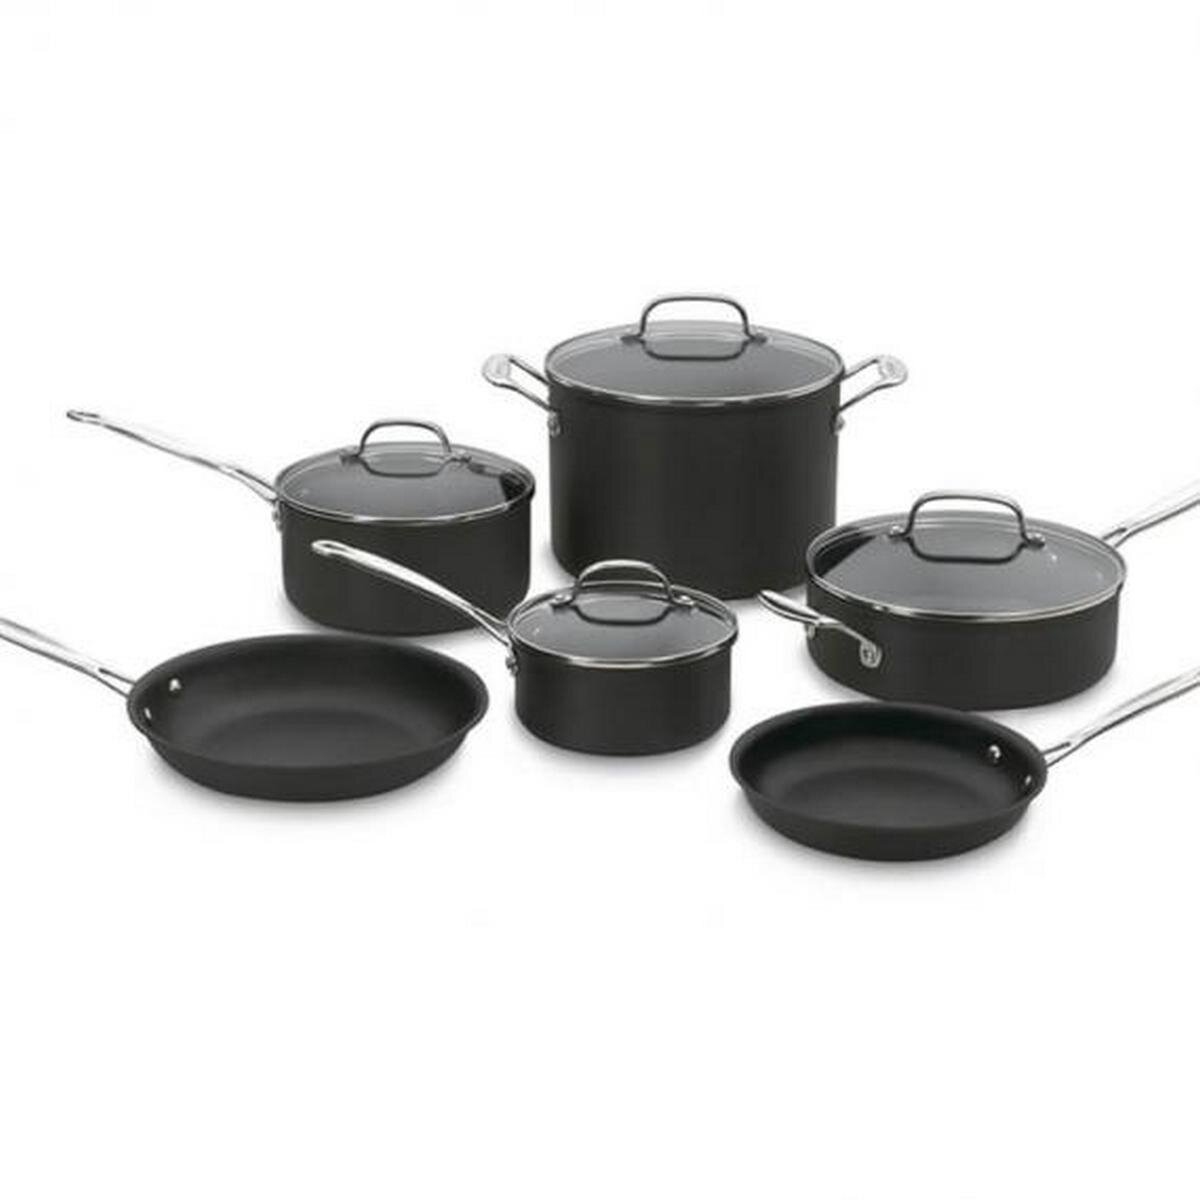 https://assets.wfcdn.com/im/13275049/compr-r85/1228/122806358/cuisinart-chefs-classic-non-stick-hard-anodized-10-piece-cookware-set.jpg